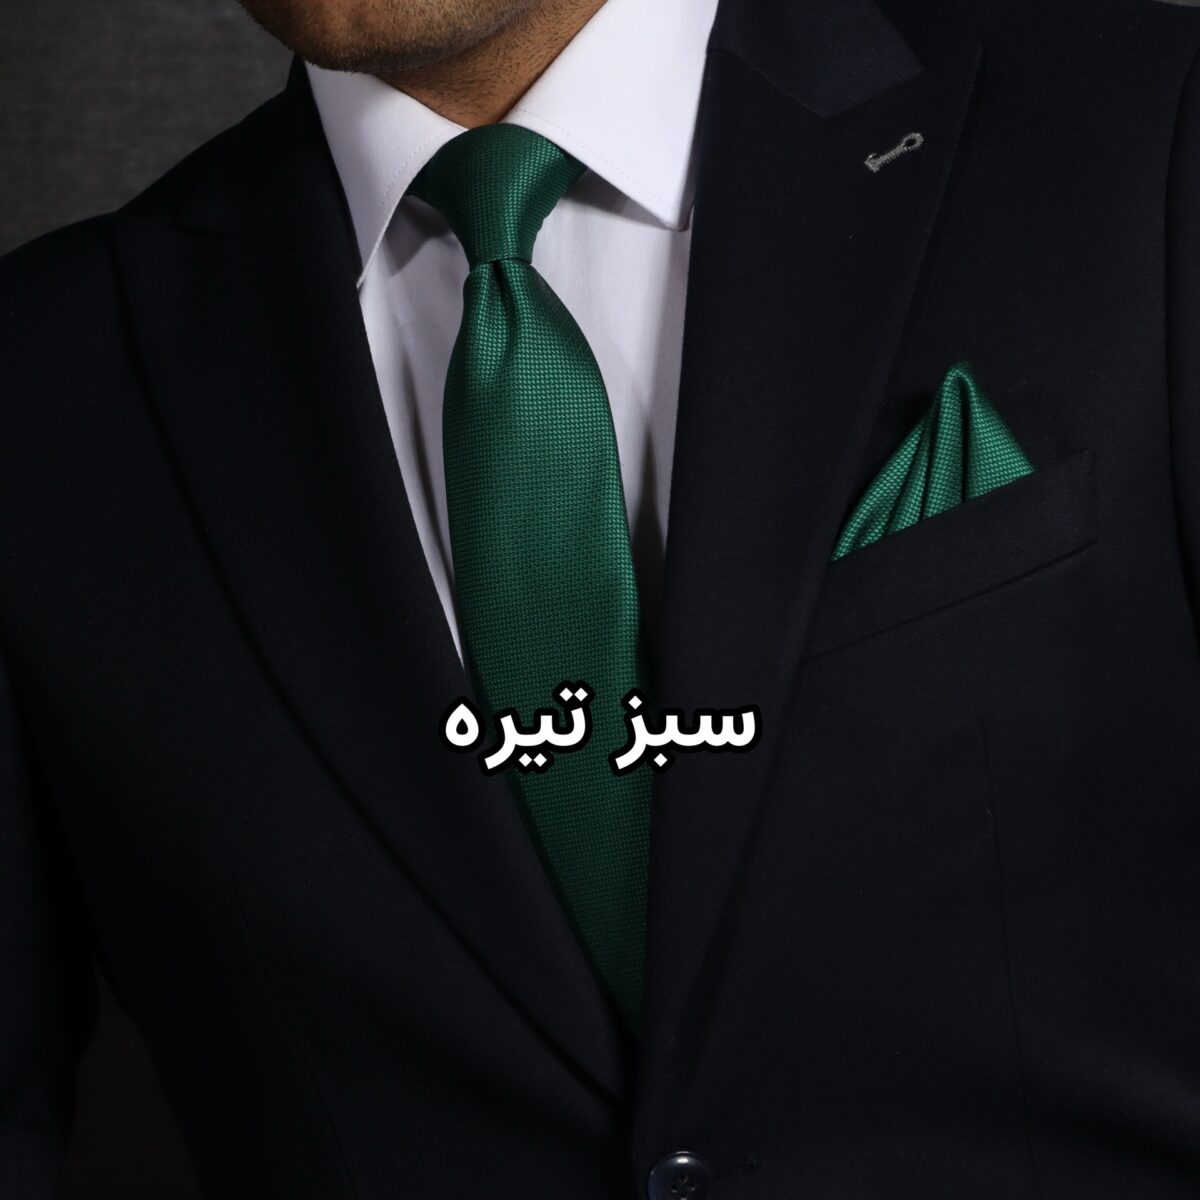 ست کراوات و پوشت سبز ساده NESEN طرح آکسفورد PL4